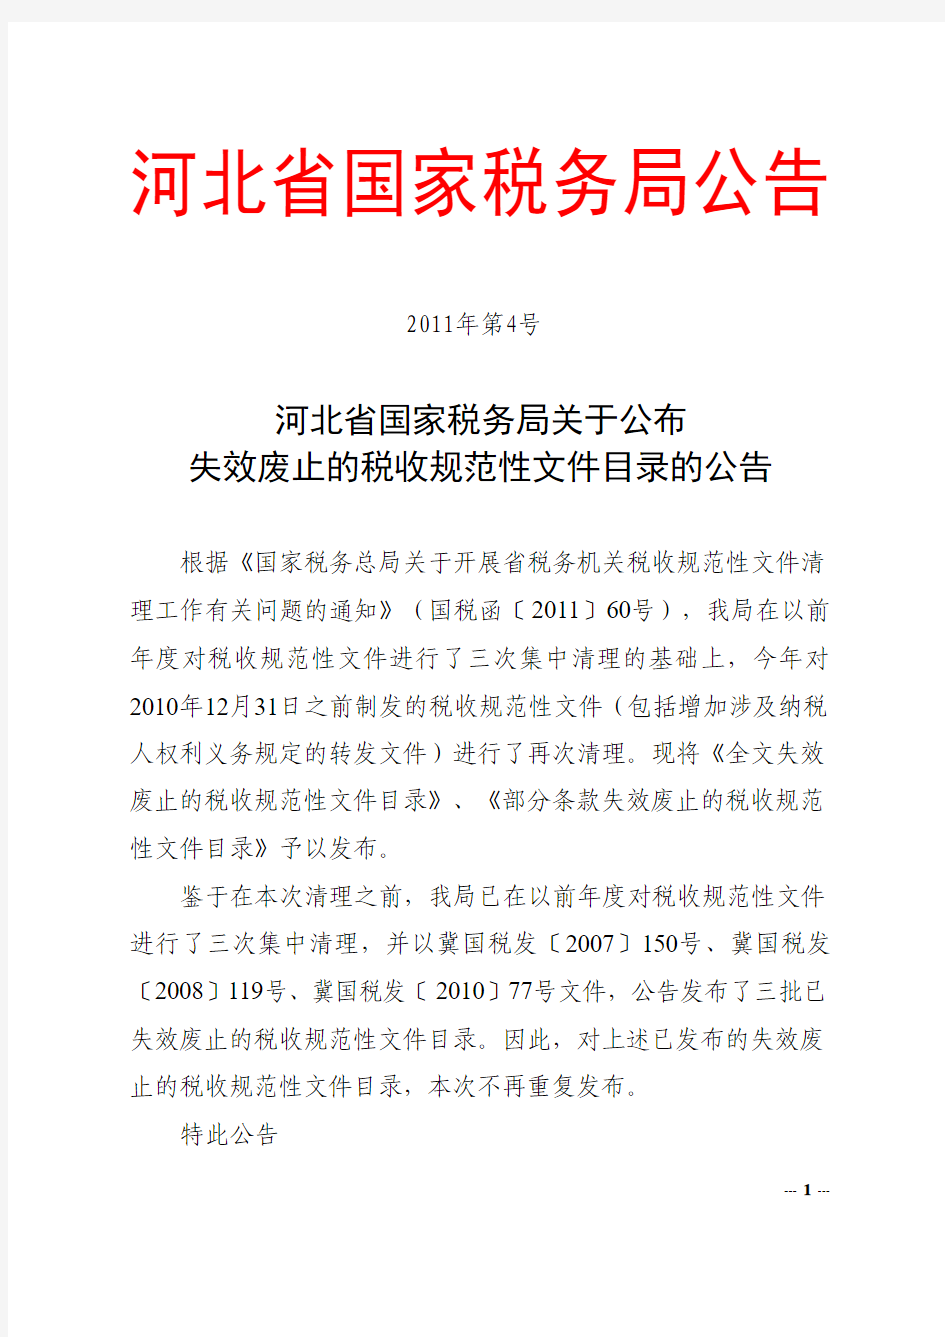 河北省国家税务局关于公布失效废止的税收规范性文件目录的公告